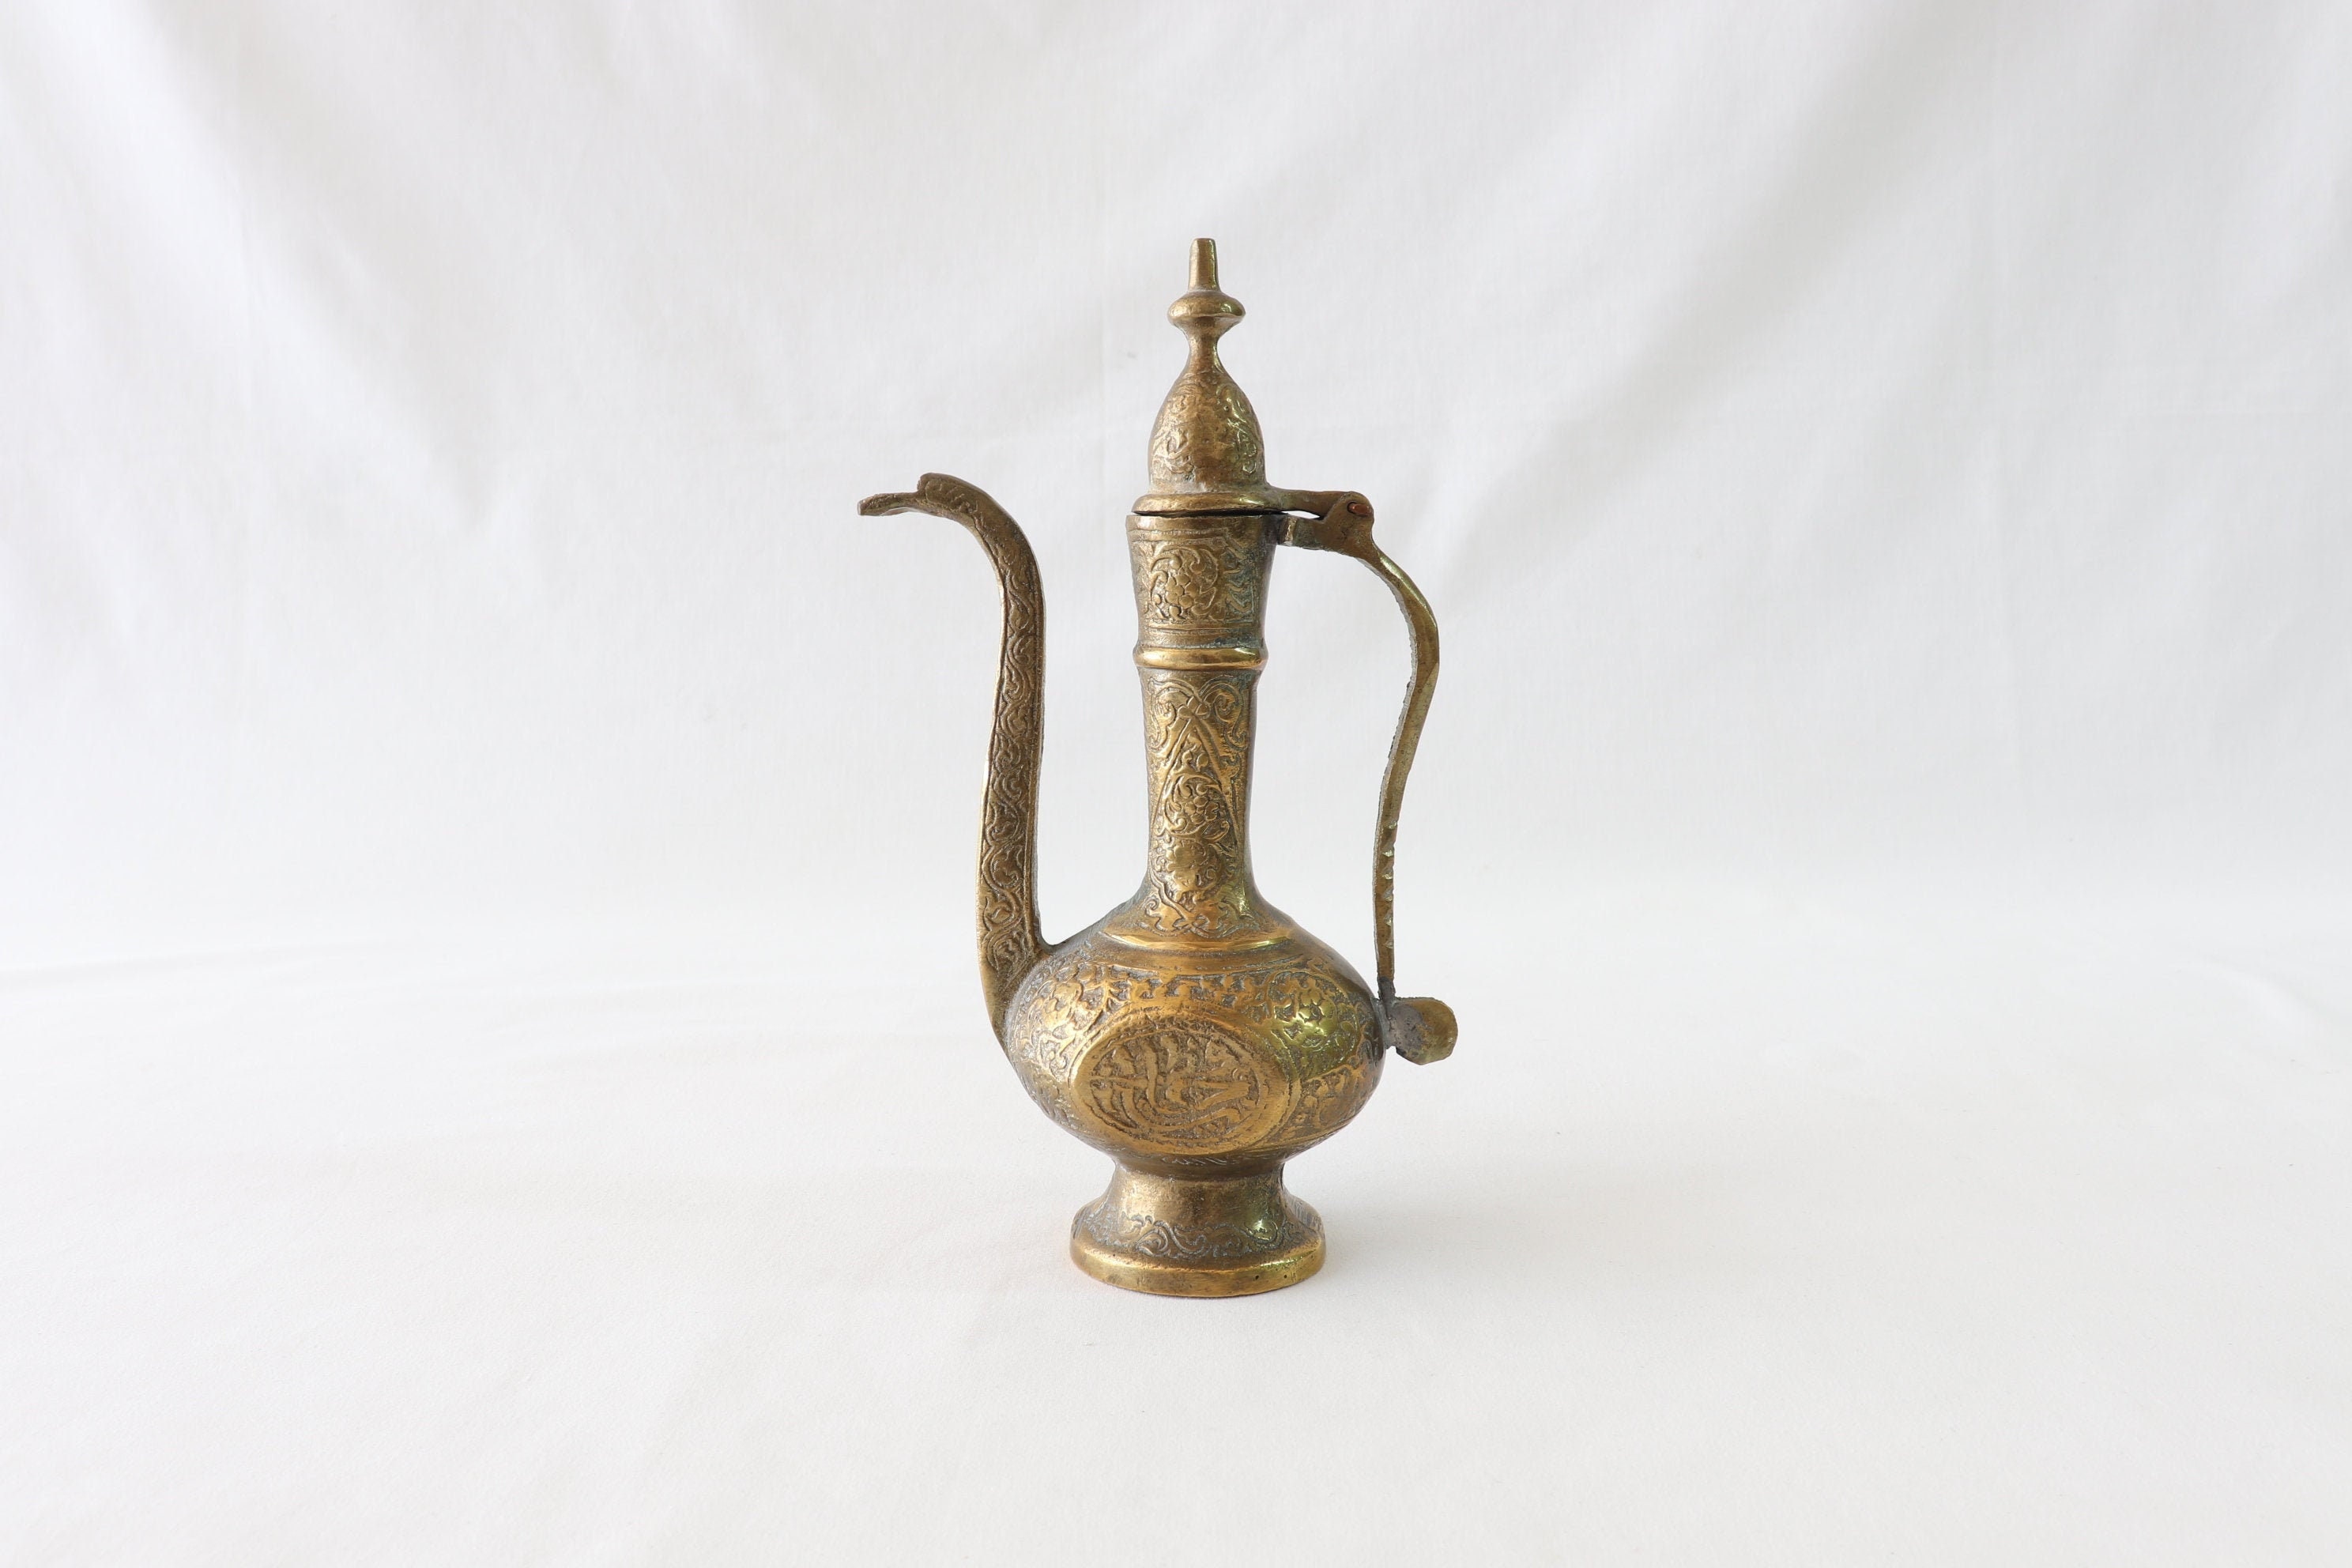 Antique brass water pitcher